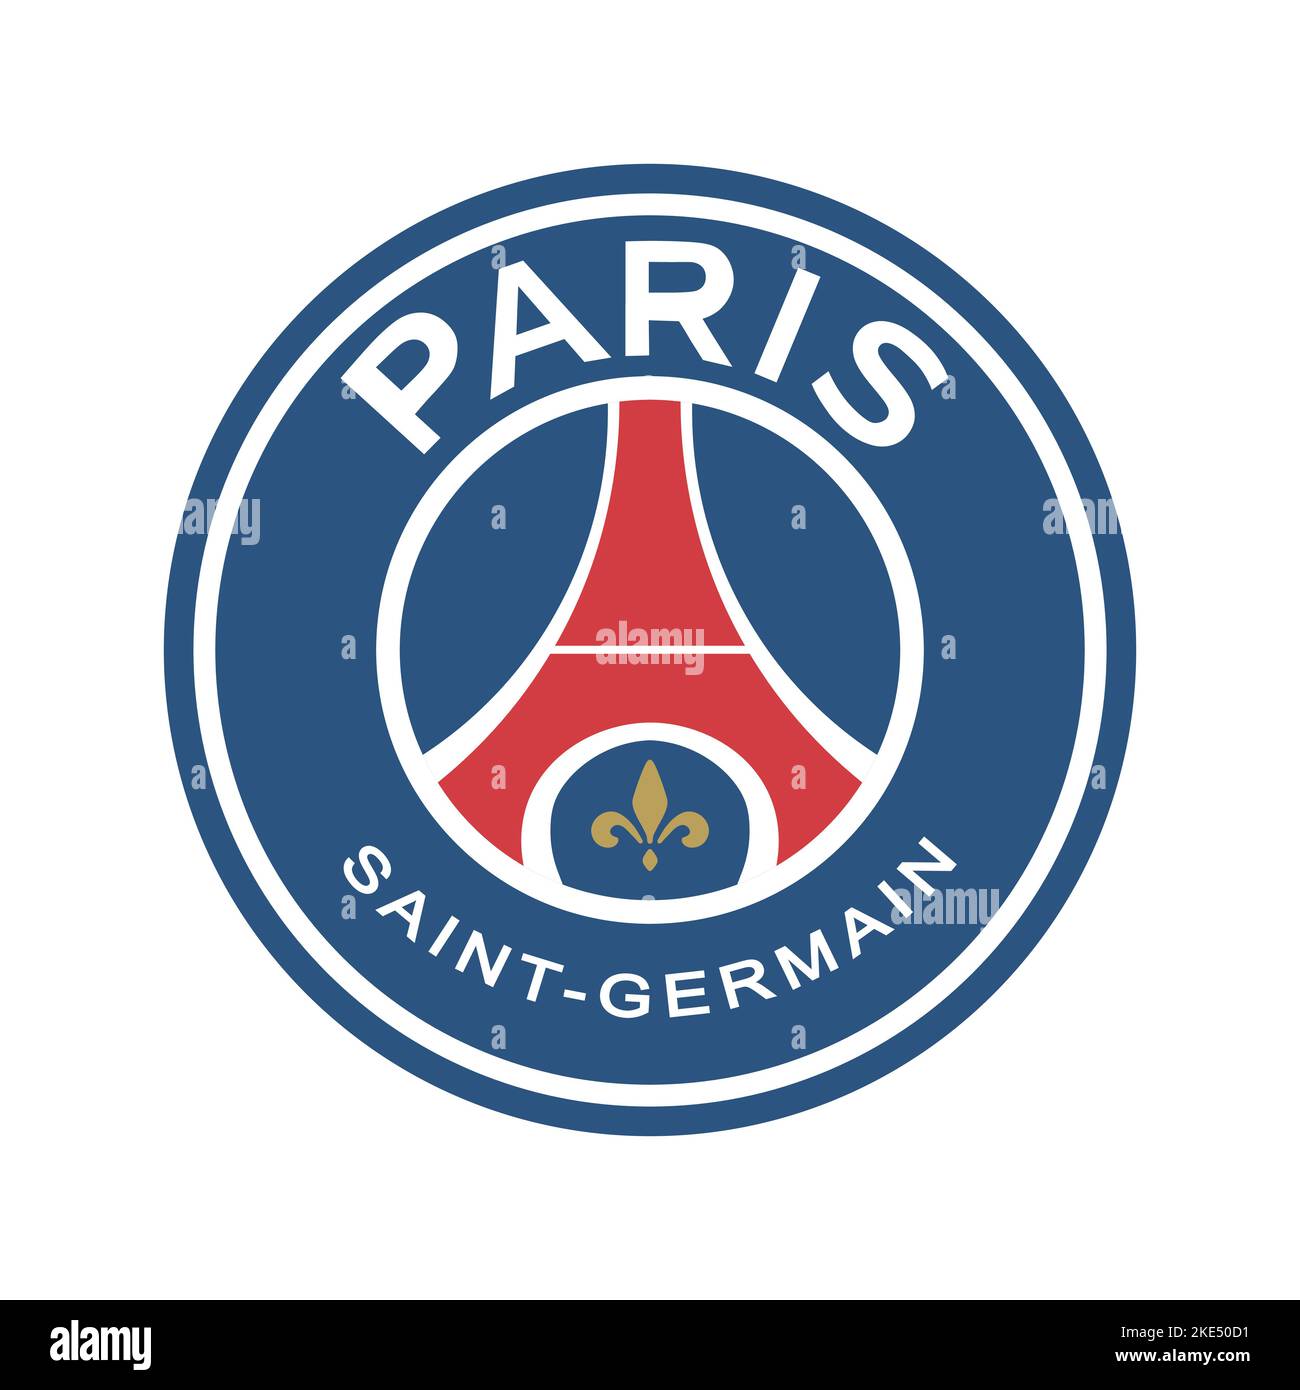 Paris saint germain stadium Cut Out Stock Images & Pictures - Alamy